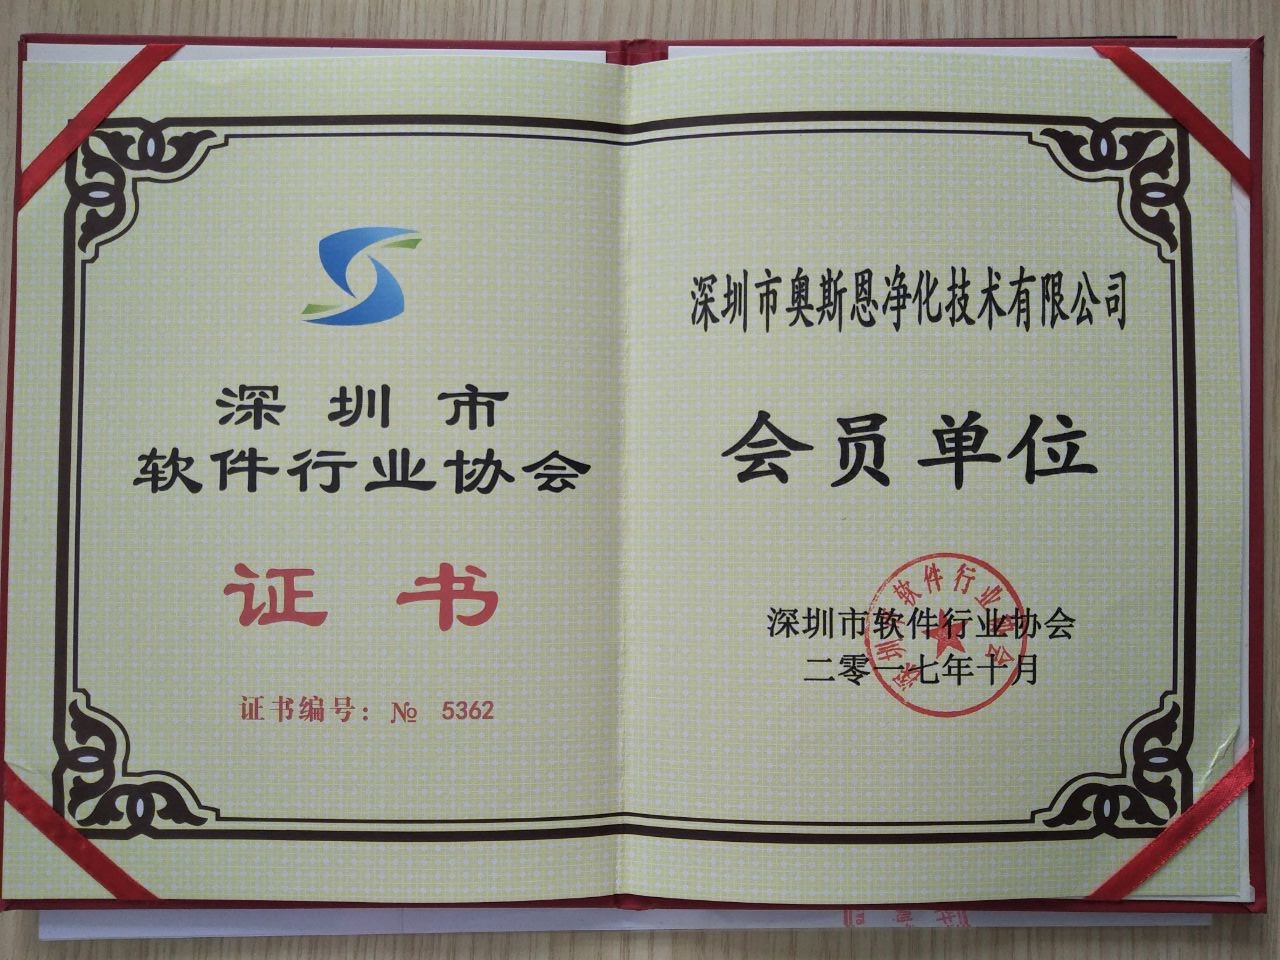 深圳市软件行业协会会员证书